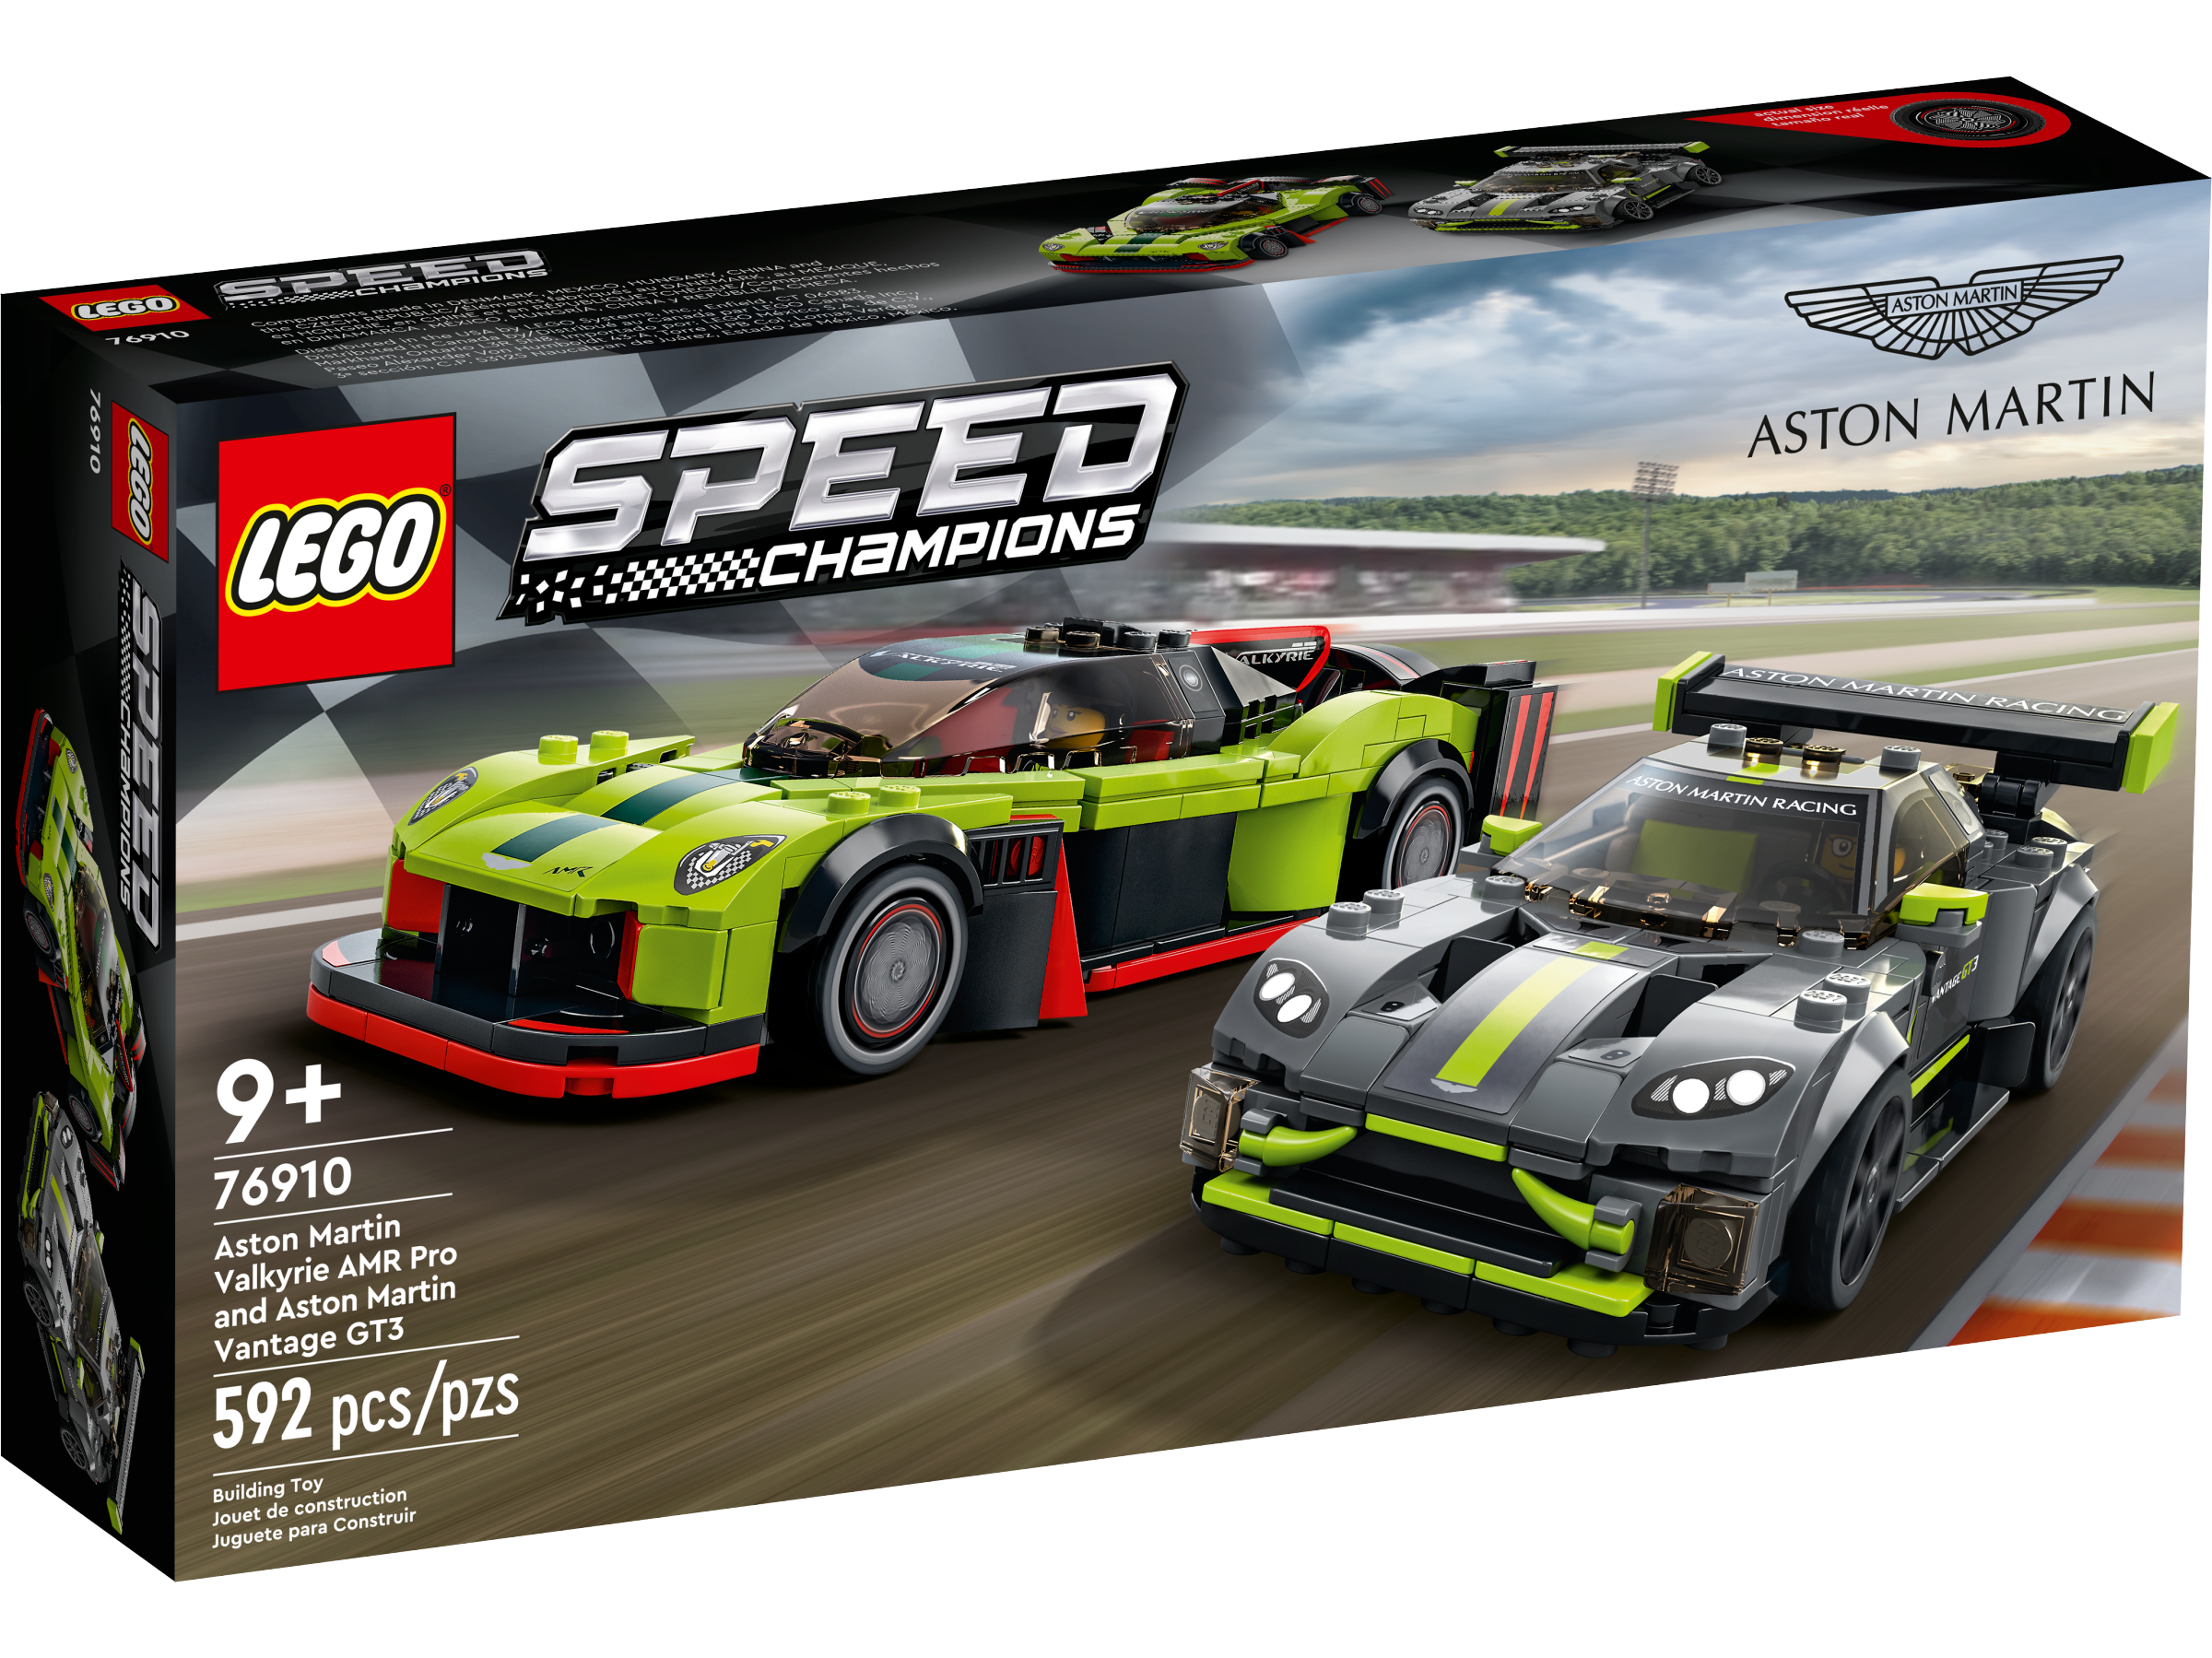 LEGO 76910 ASTON MARTIN AMR PRO E ASTON MARTIN VANTAGE GT3 SPEED CHAMPIONS